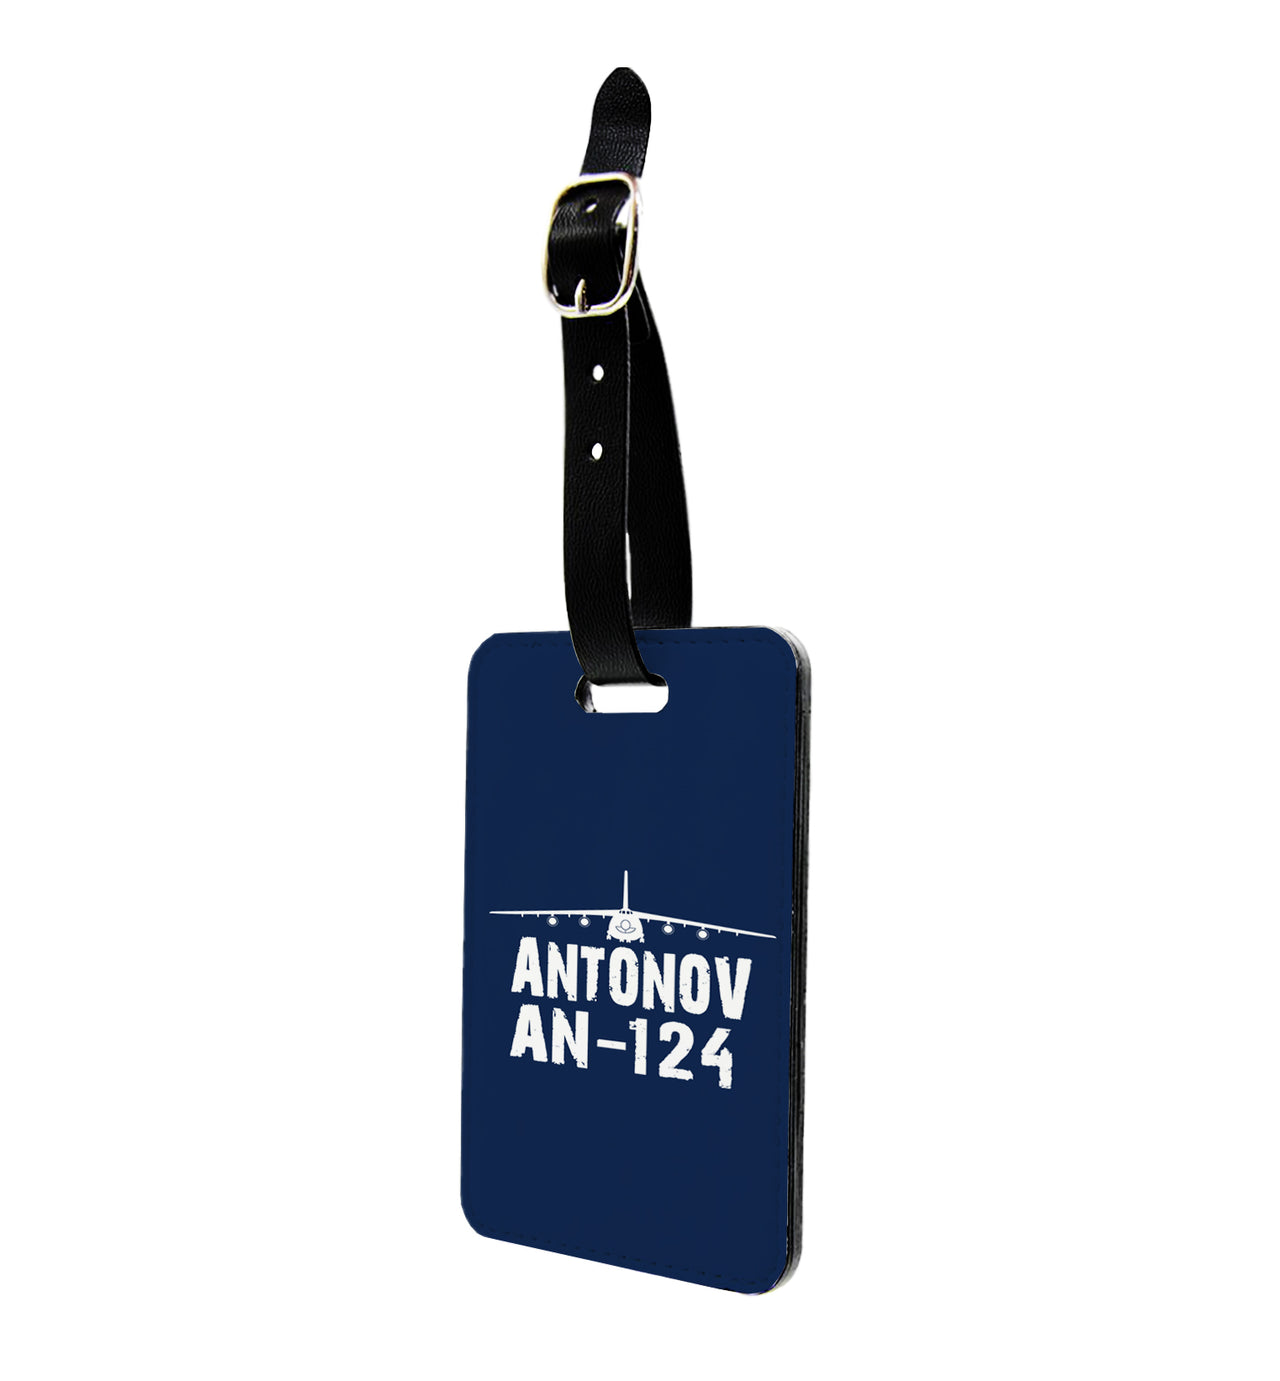 Antonov AN-124 & Plane Designed Luggage Tag